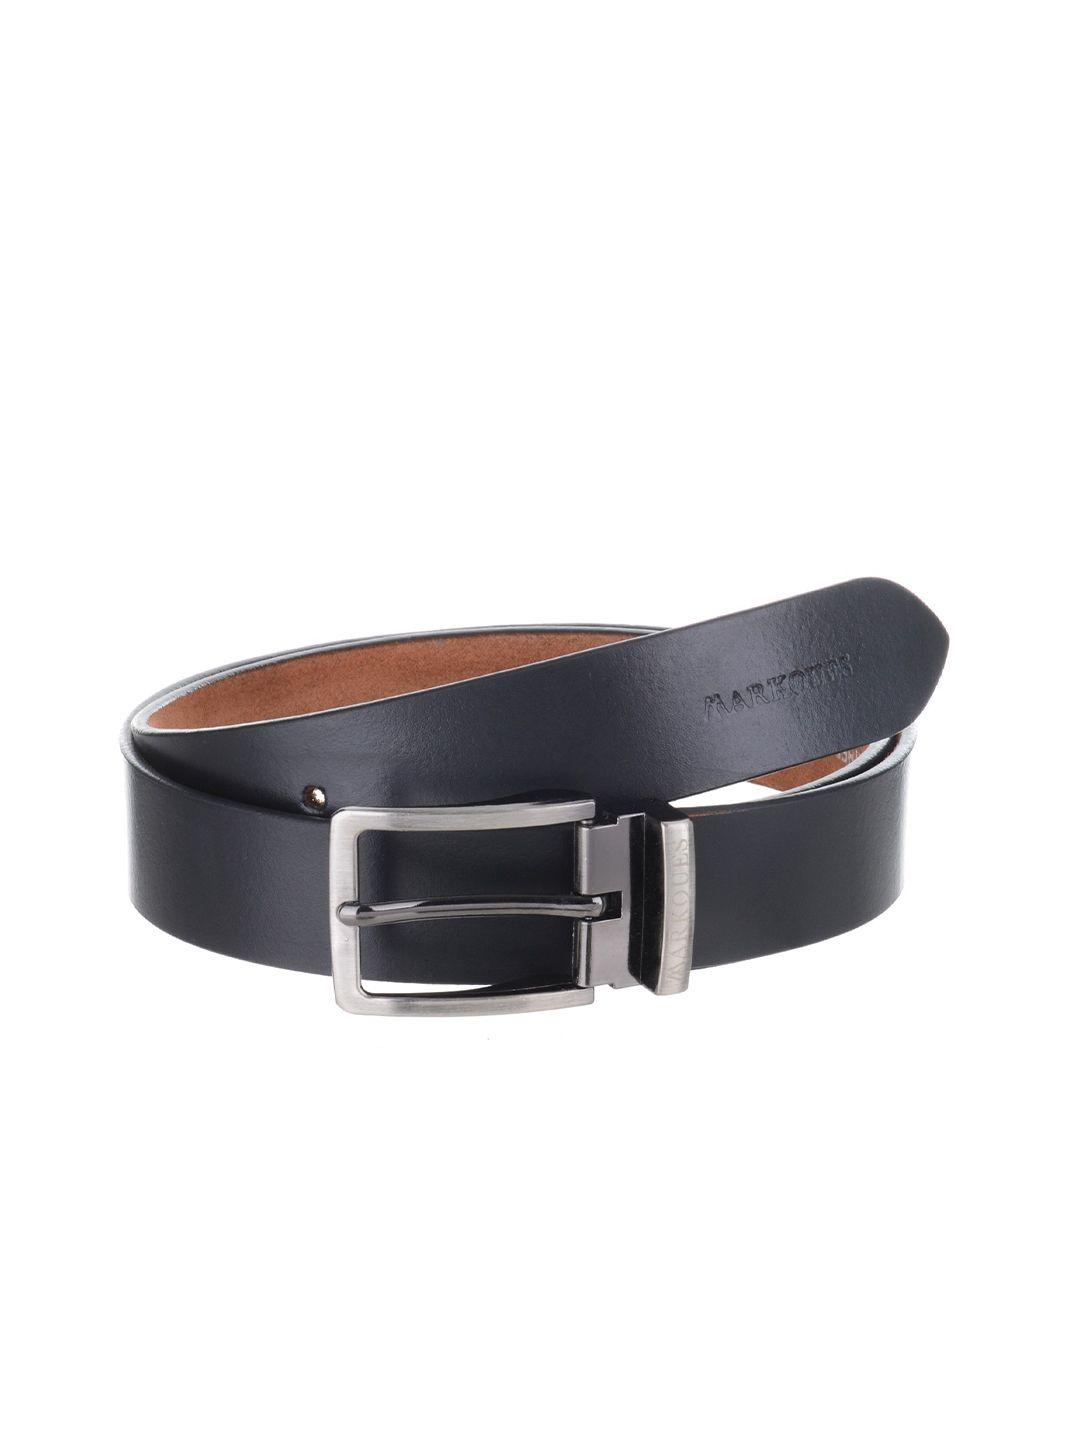 markques men solid genuine leather belt